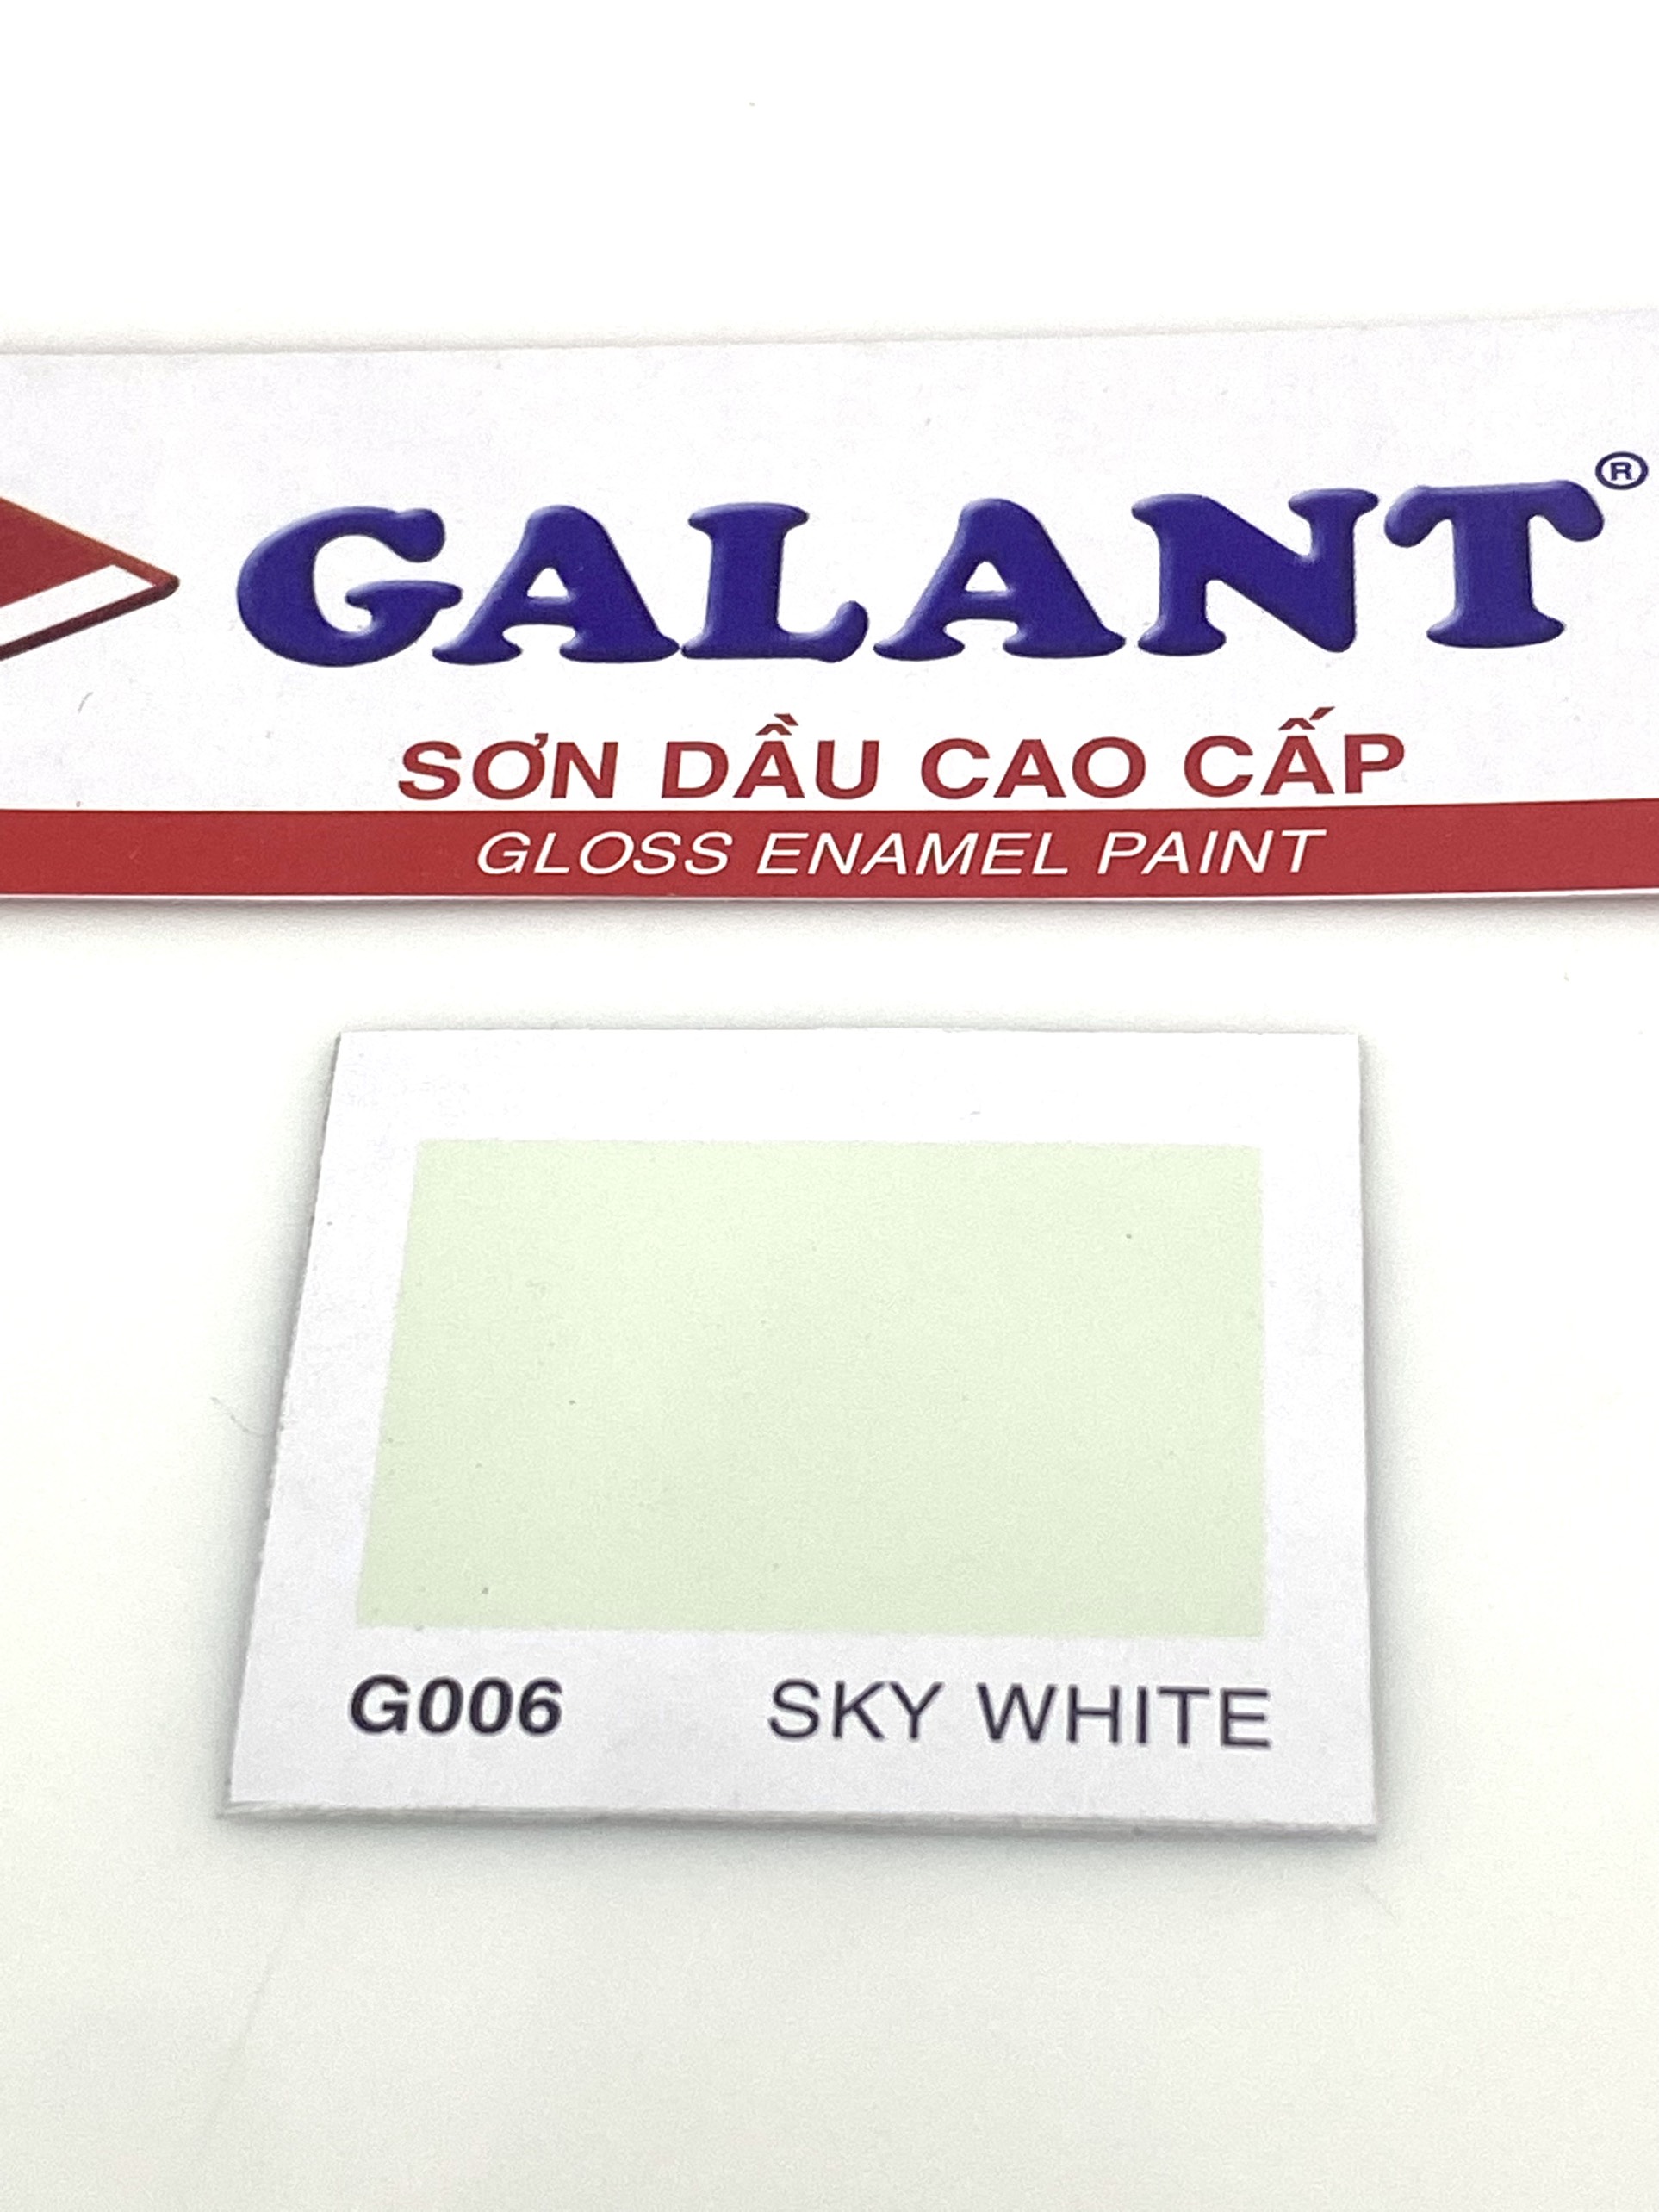 Sơn dầu Galant màu Sky White G006 _ 0.8L